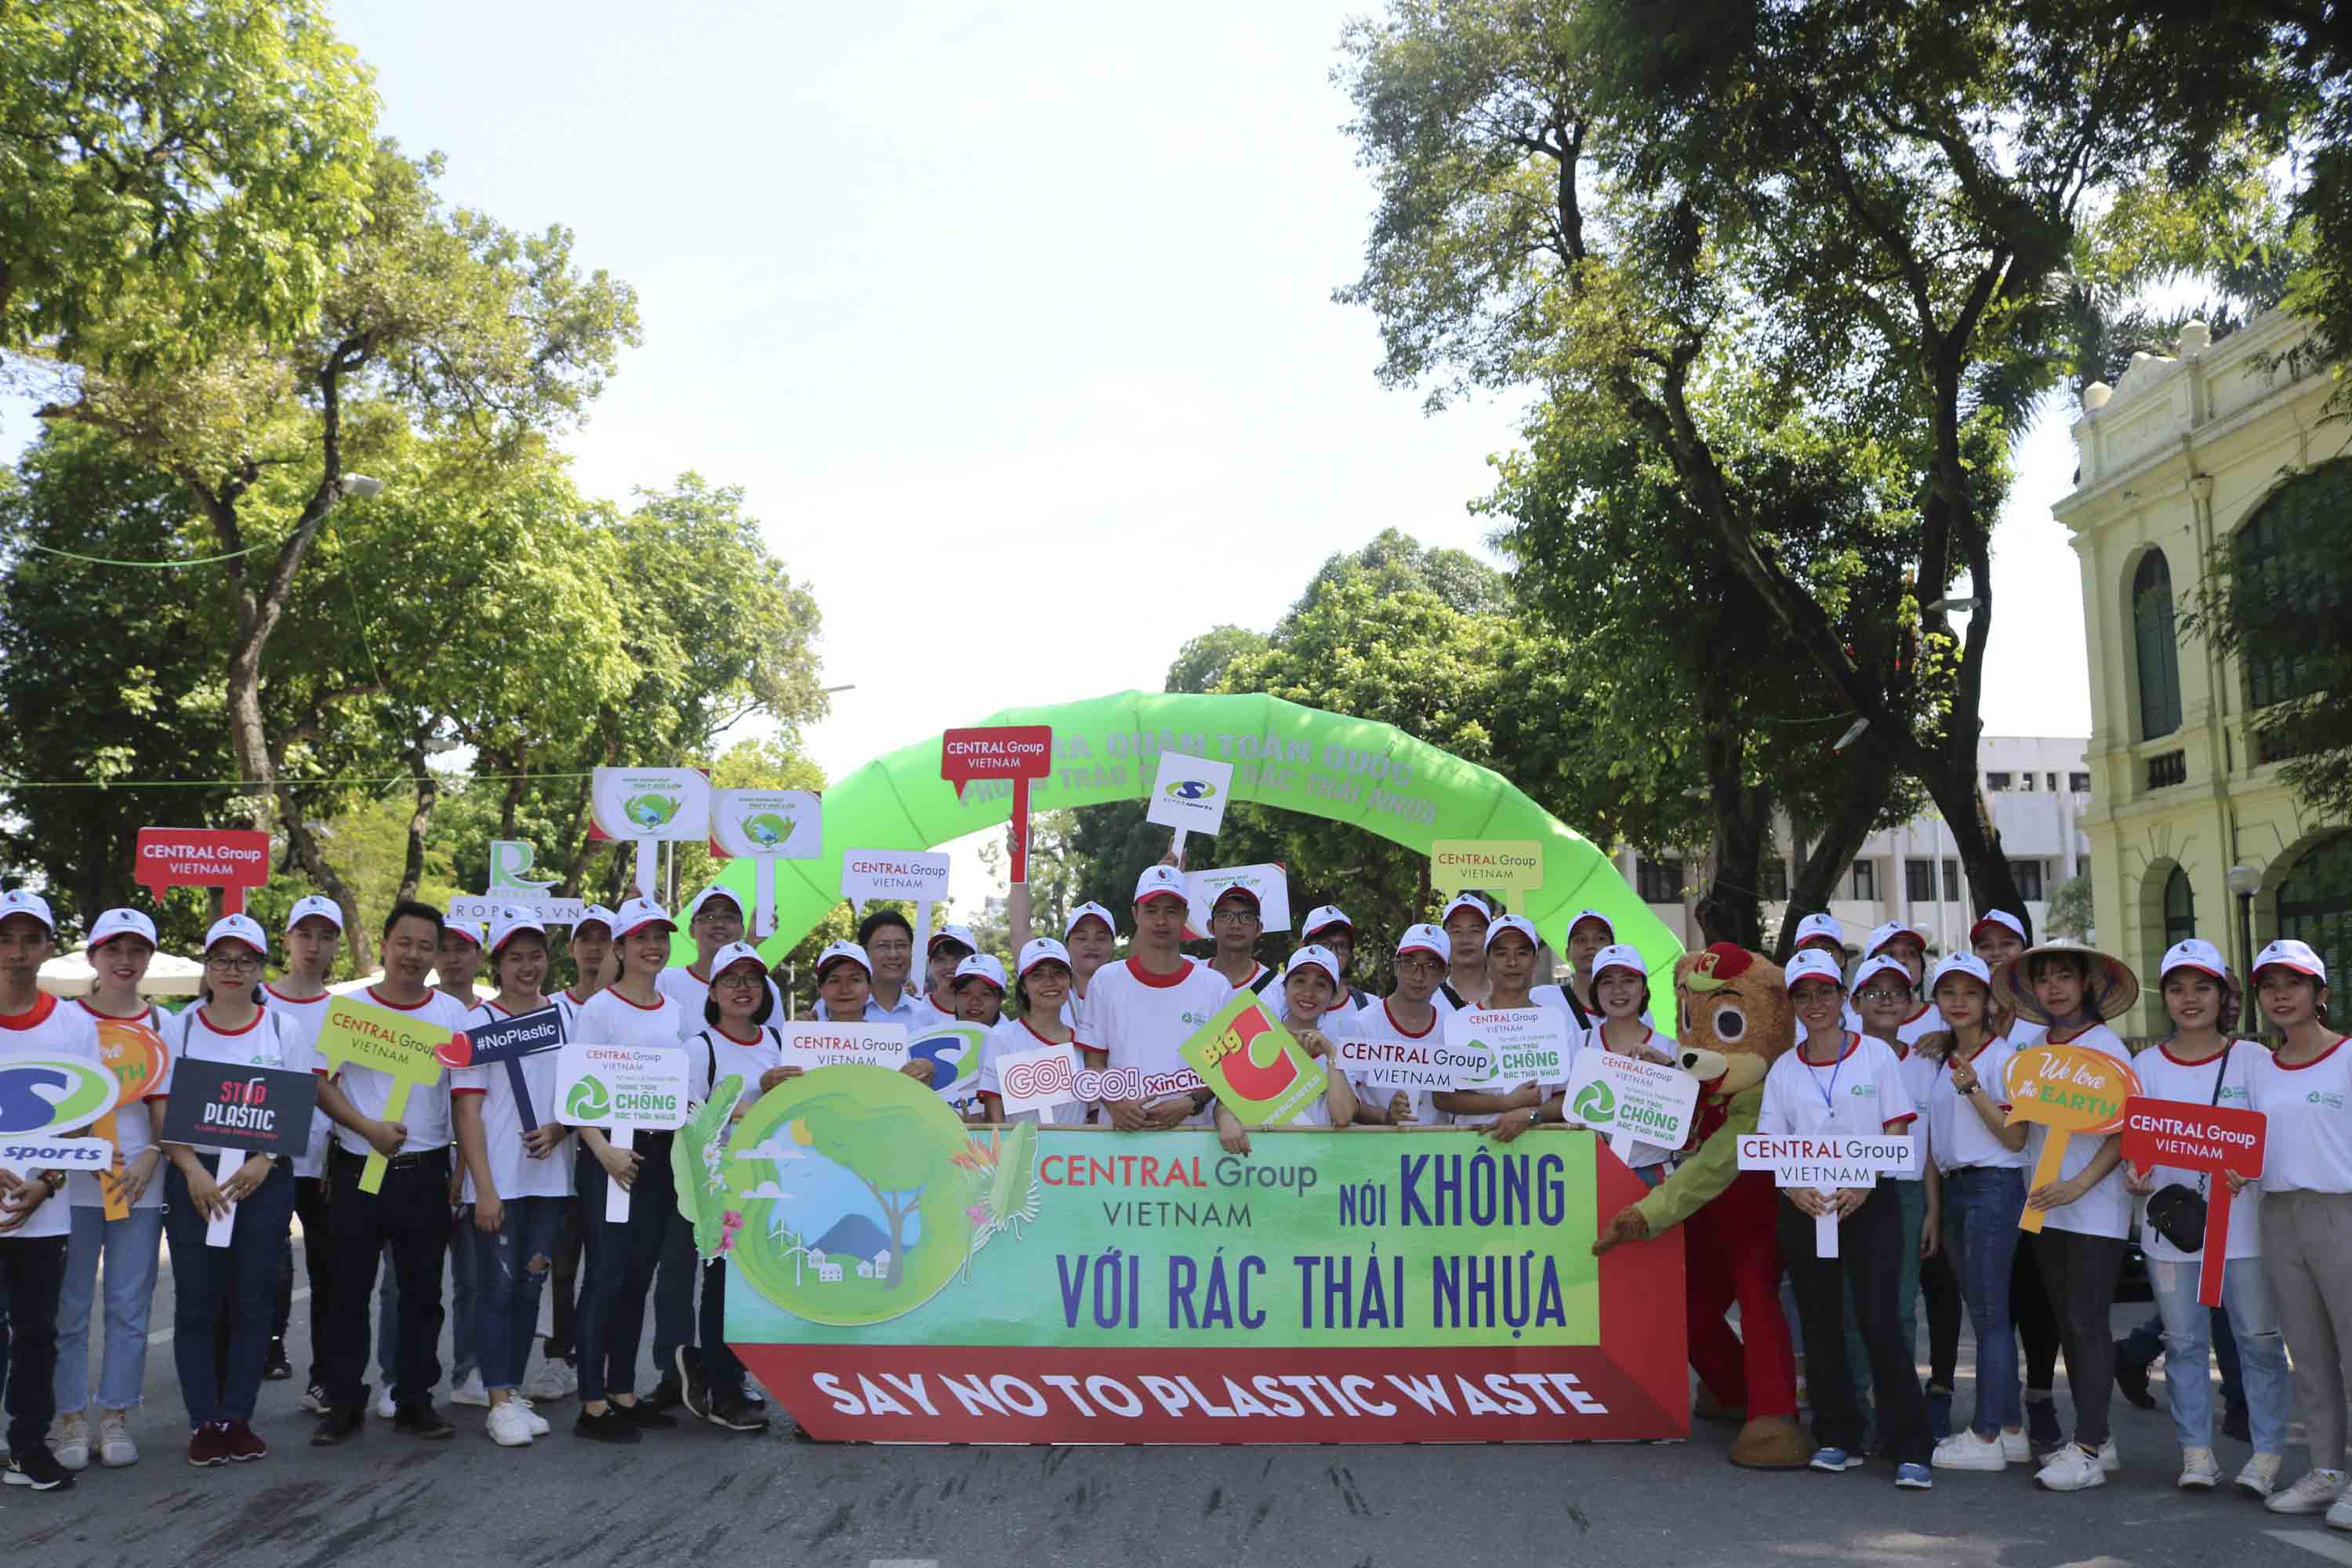 Central Group Việt Nam hưởng ứng “Lễ ra quân toàn quốc Phong trào Chống rác thải nhựa”